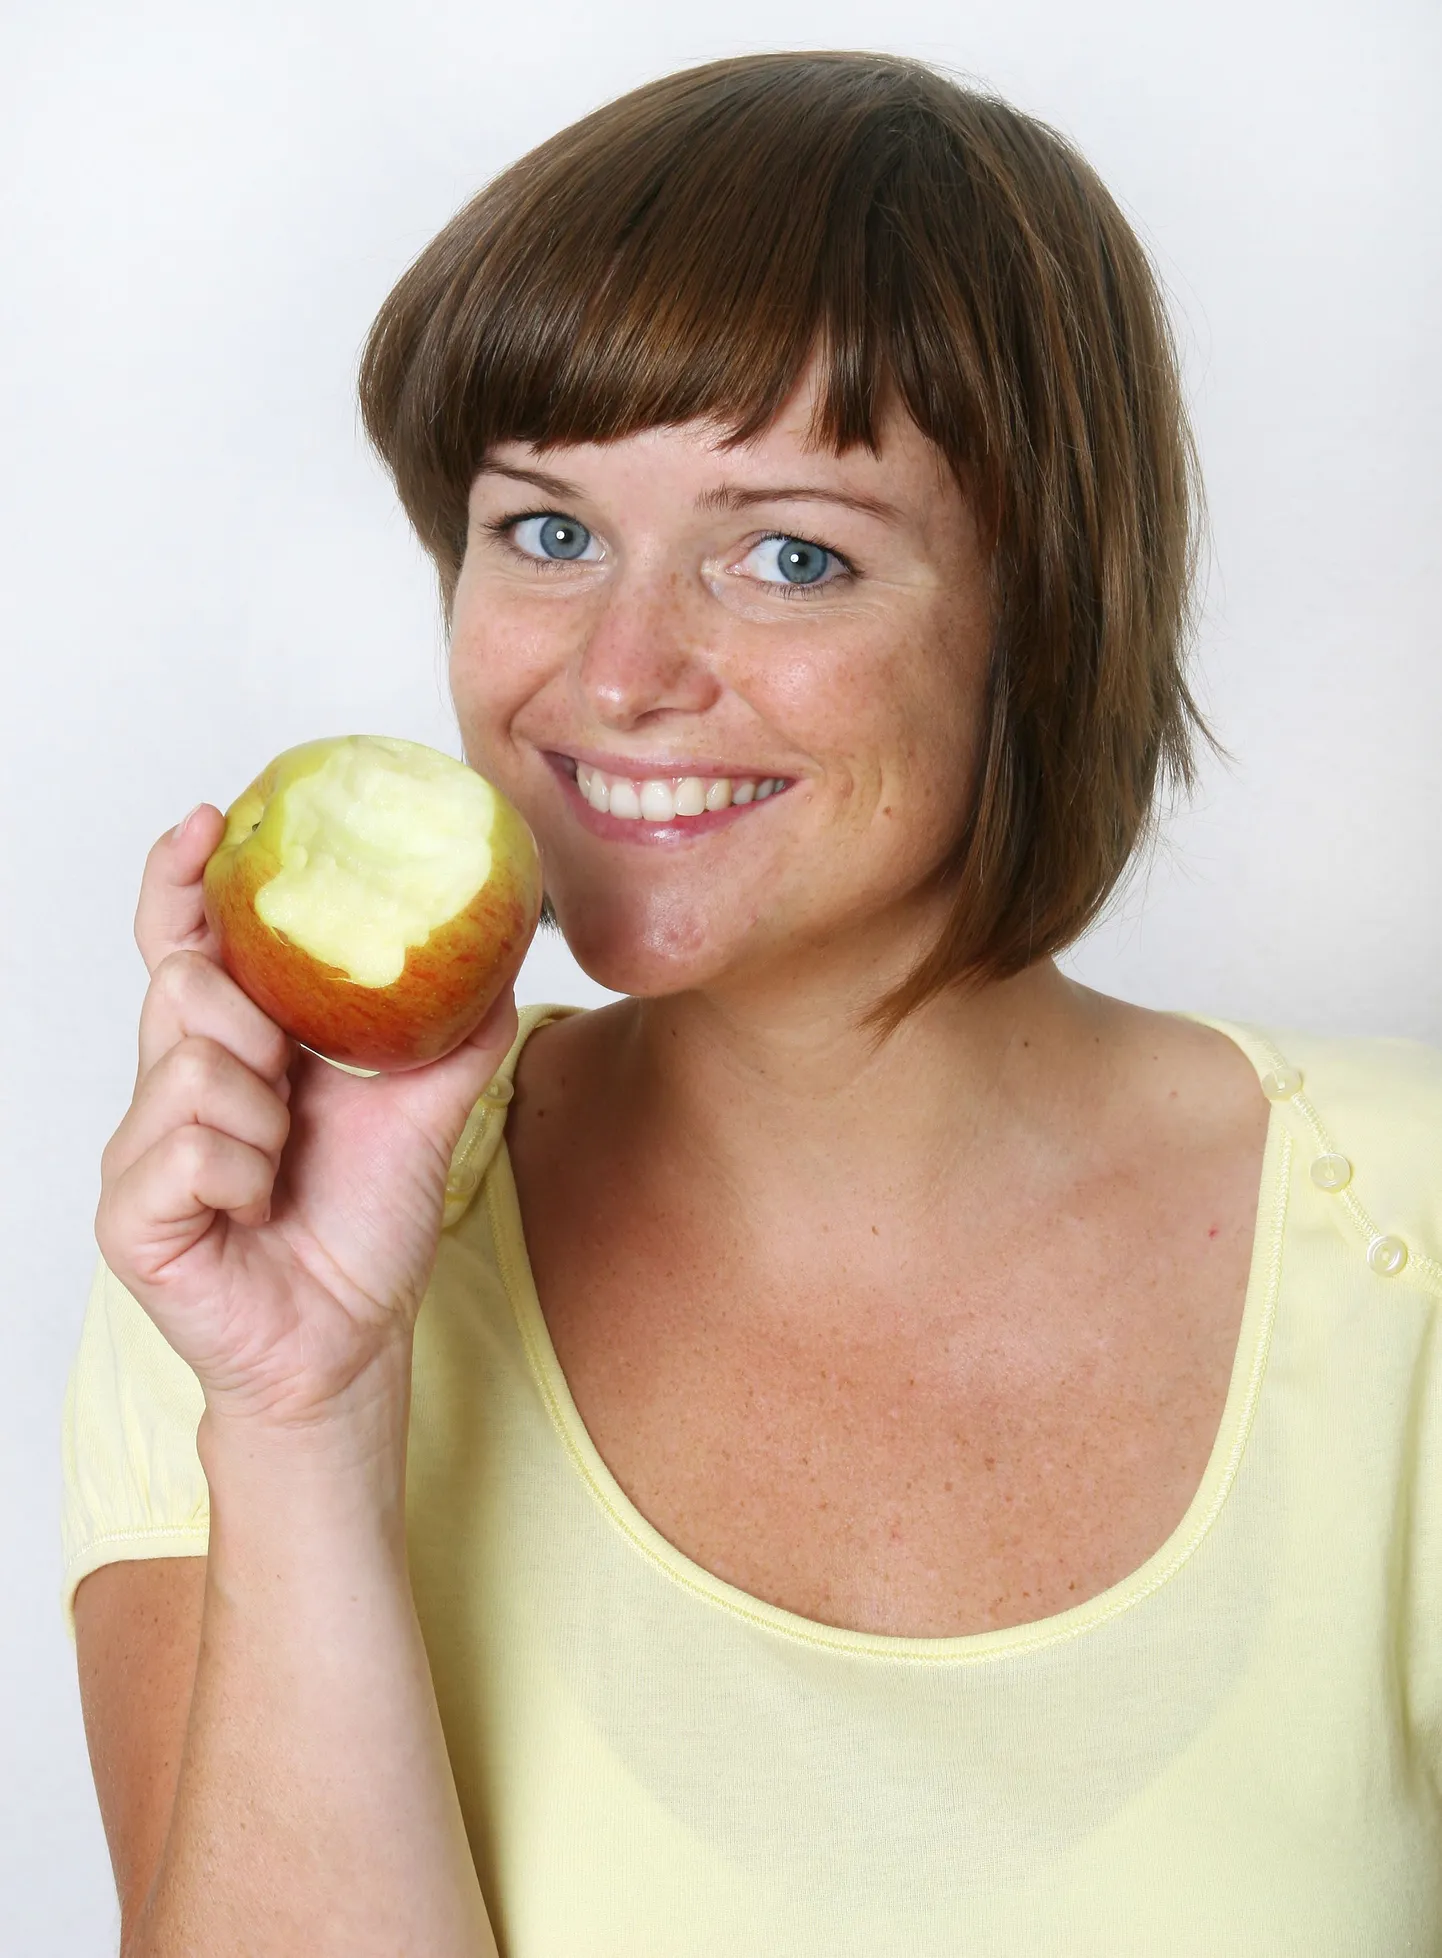 Kaks õuna peaks kuuluma tervislikku igapäevamenüüsse.